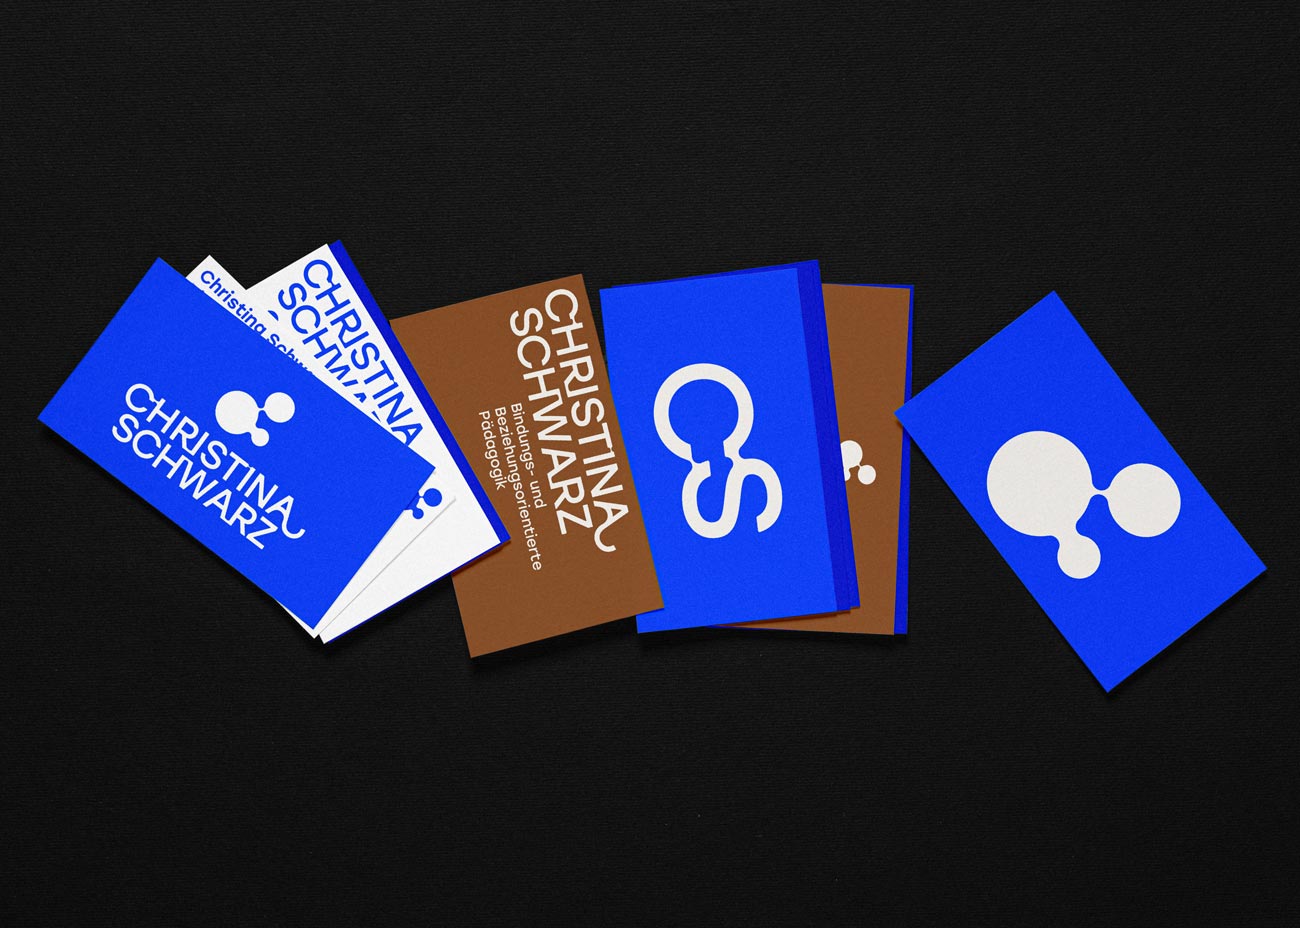 Mehrere Visitenkarten liegen hochkant nebeneinander auf dunklem Grund. Darauf einige der verschiedenen Logovarianten. Die CI-Farben sind gut erkennbar: Blau, weiß und ein rötliches Braun.